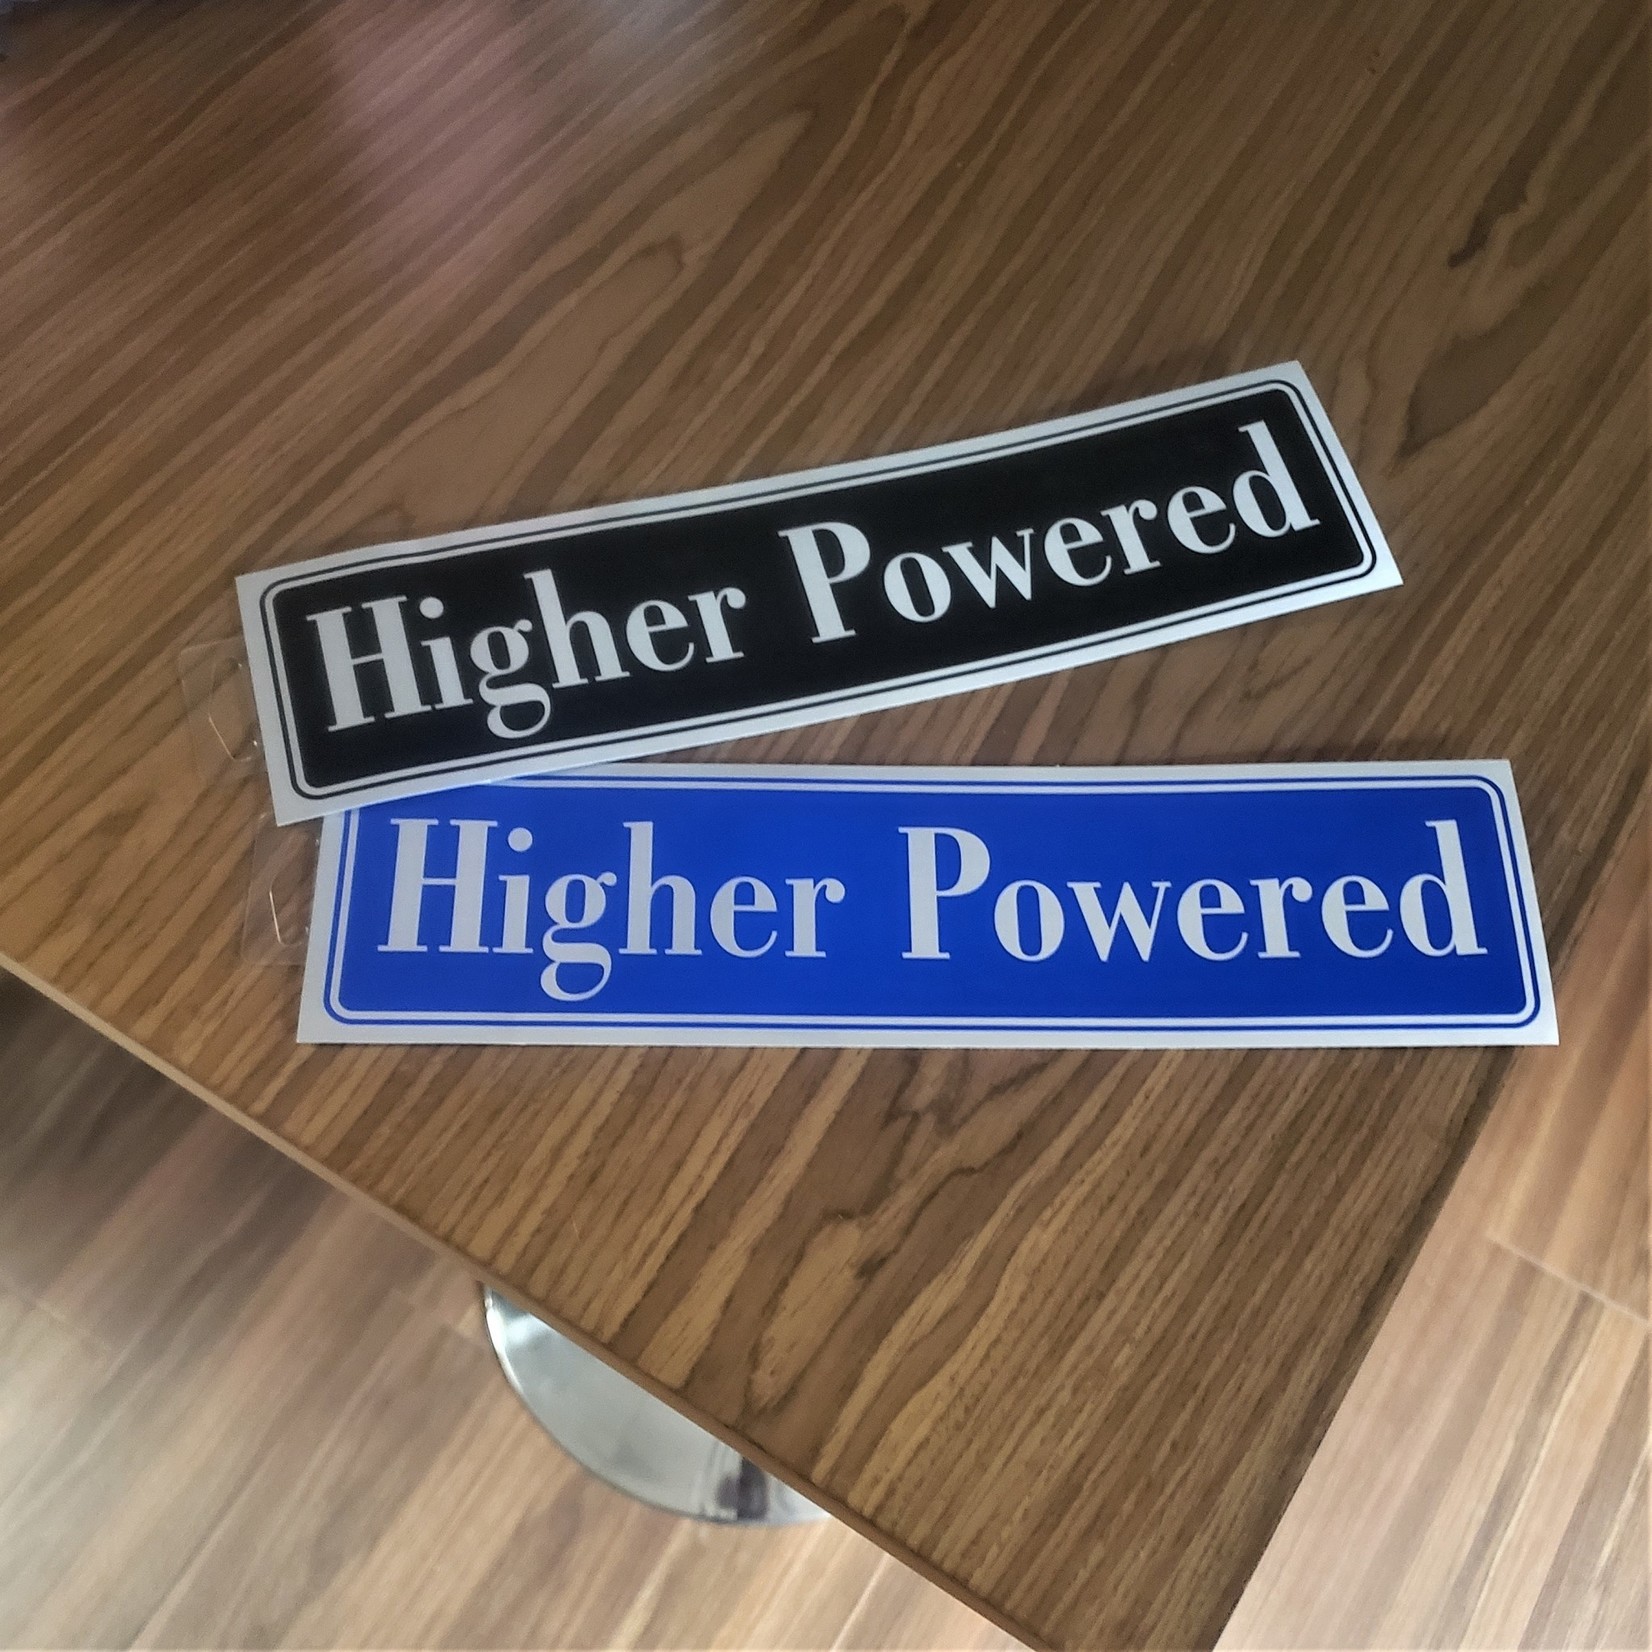 Higher Powered [Blue] Bumper Sticker